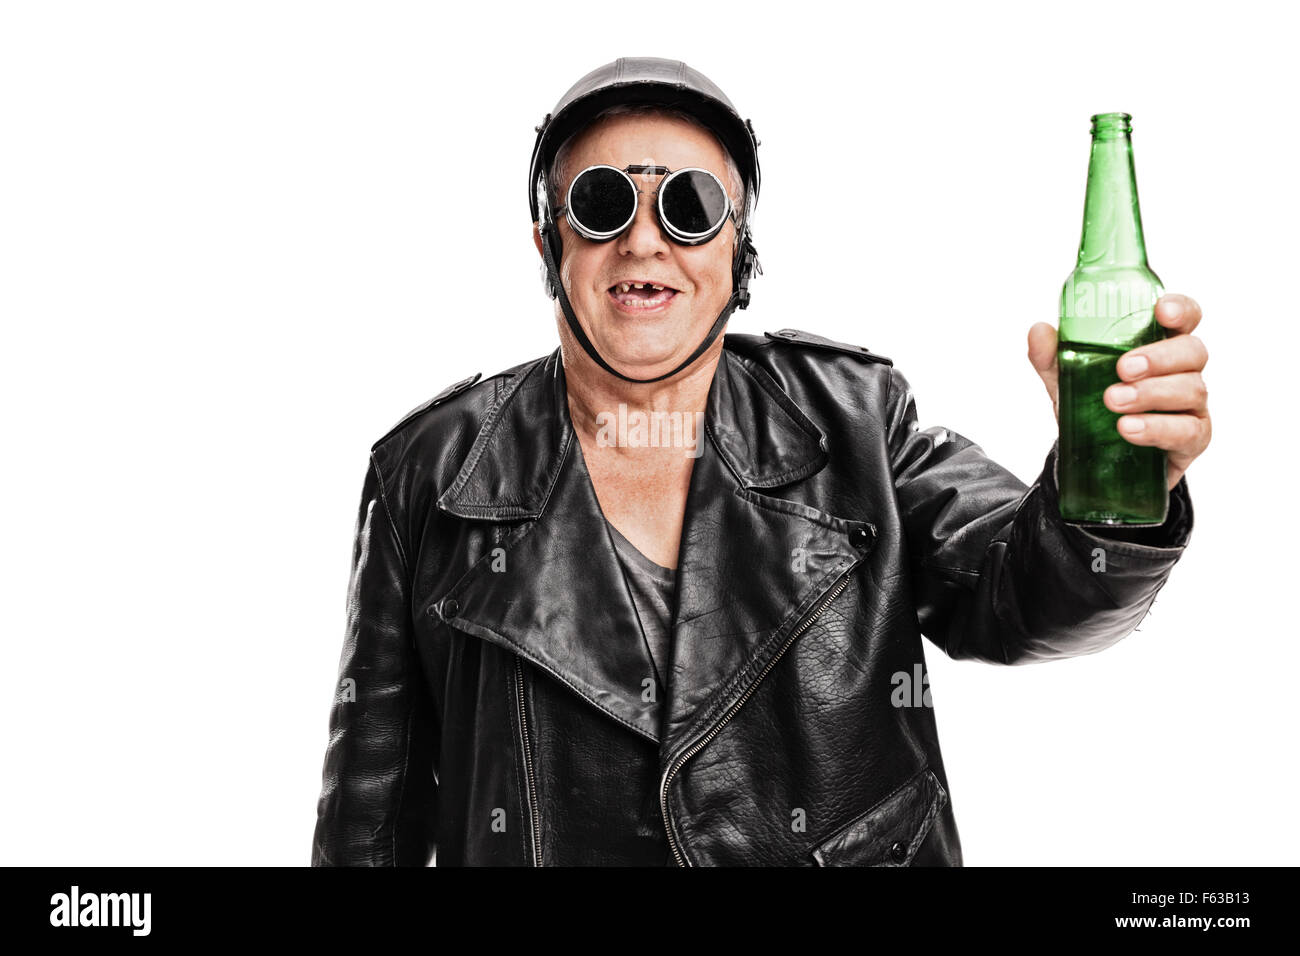 Senior sdentati motociclista in nero giacca di pelle e occhiali in possesso di una bottiglia di birra e guardando la telecamera Foto Stock